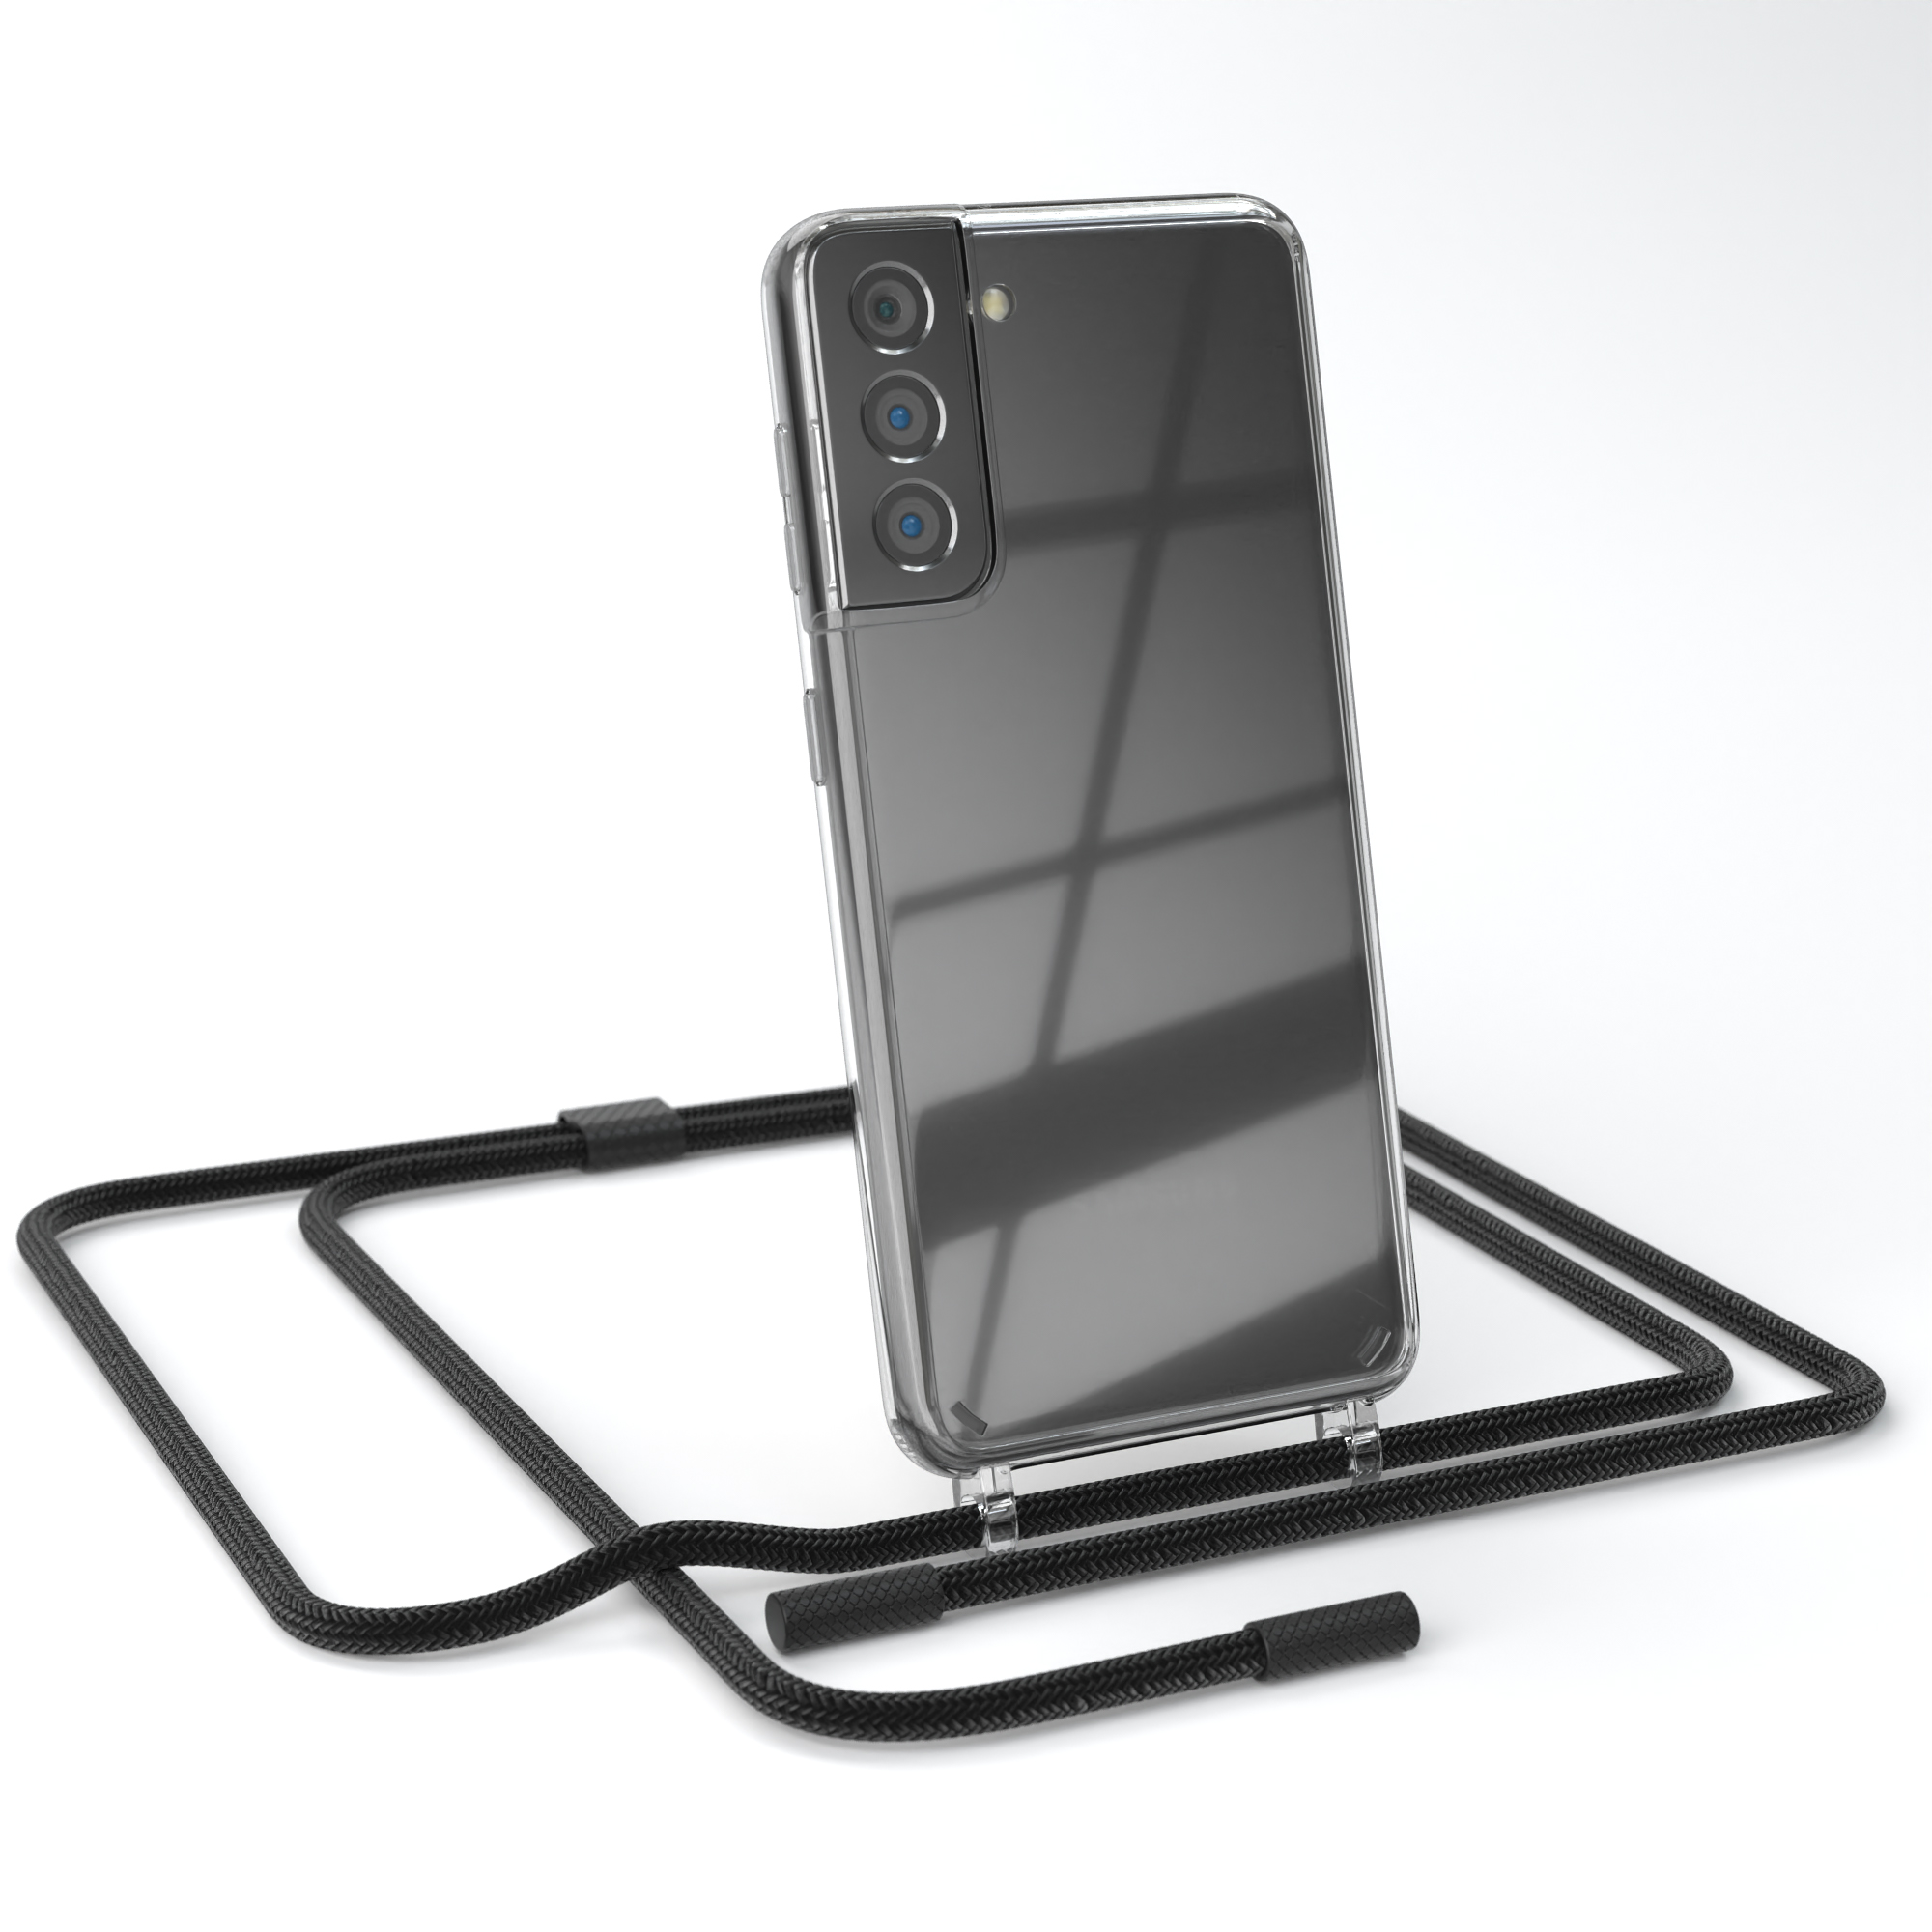 EAZY CASE Transparente Handyhülle mit Umhängetasche, runder Kette Galaxy 5G, S21 Schwarz unifarbend, Samsung